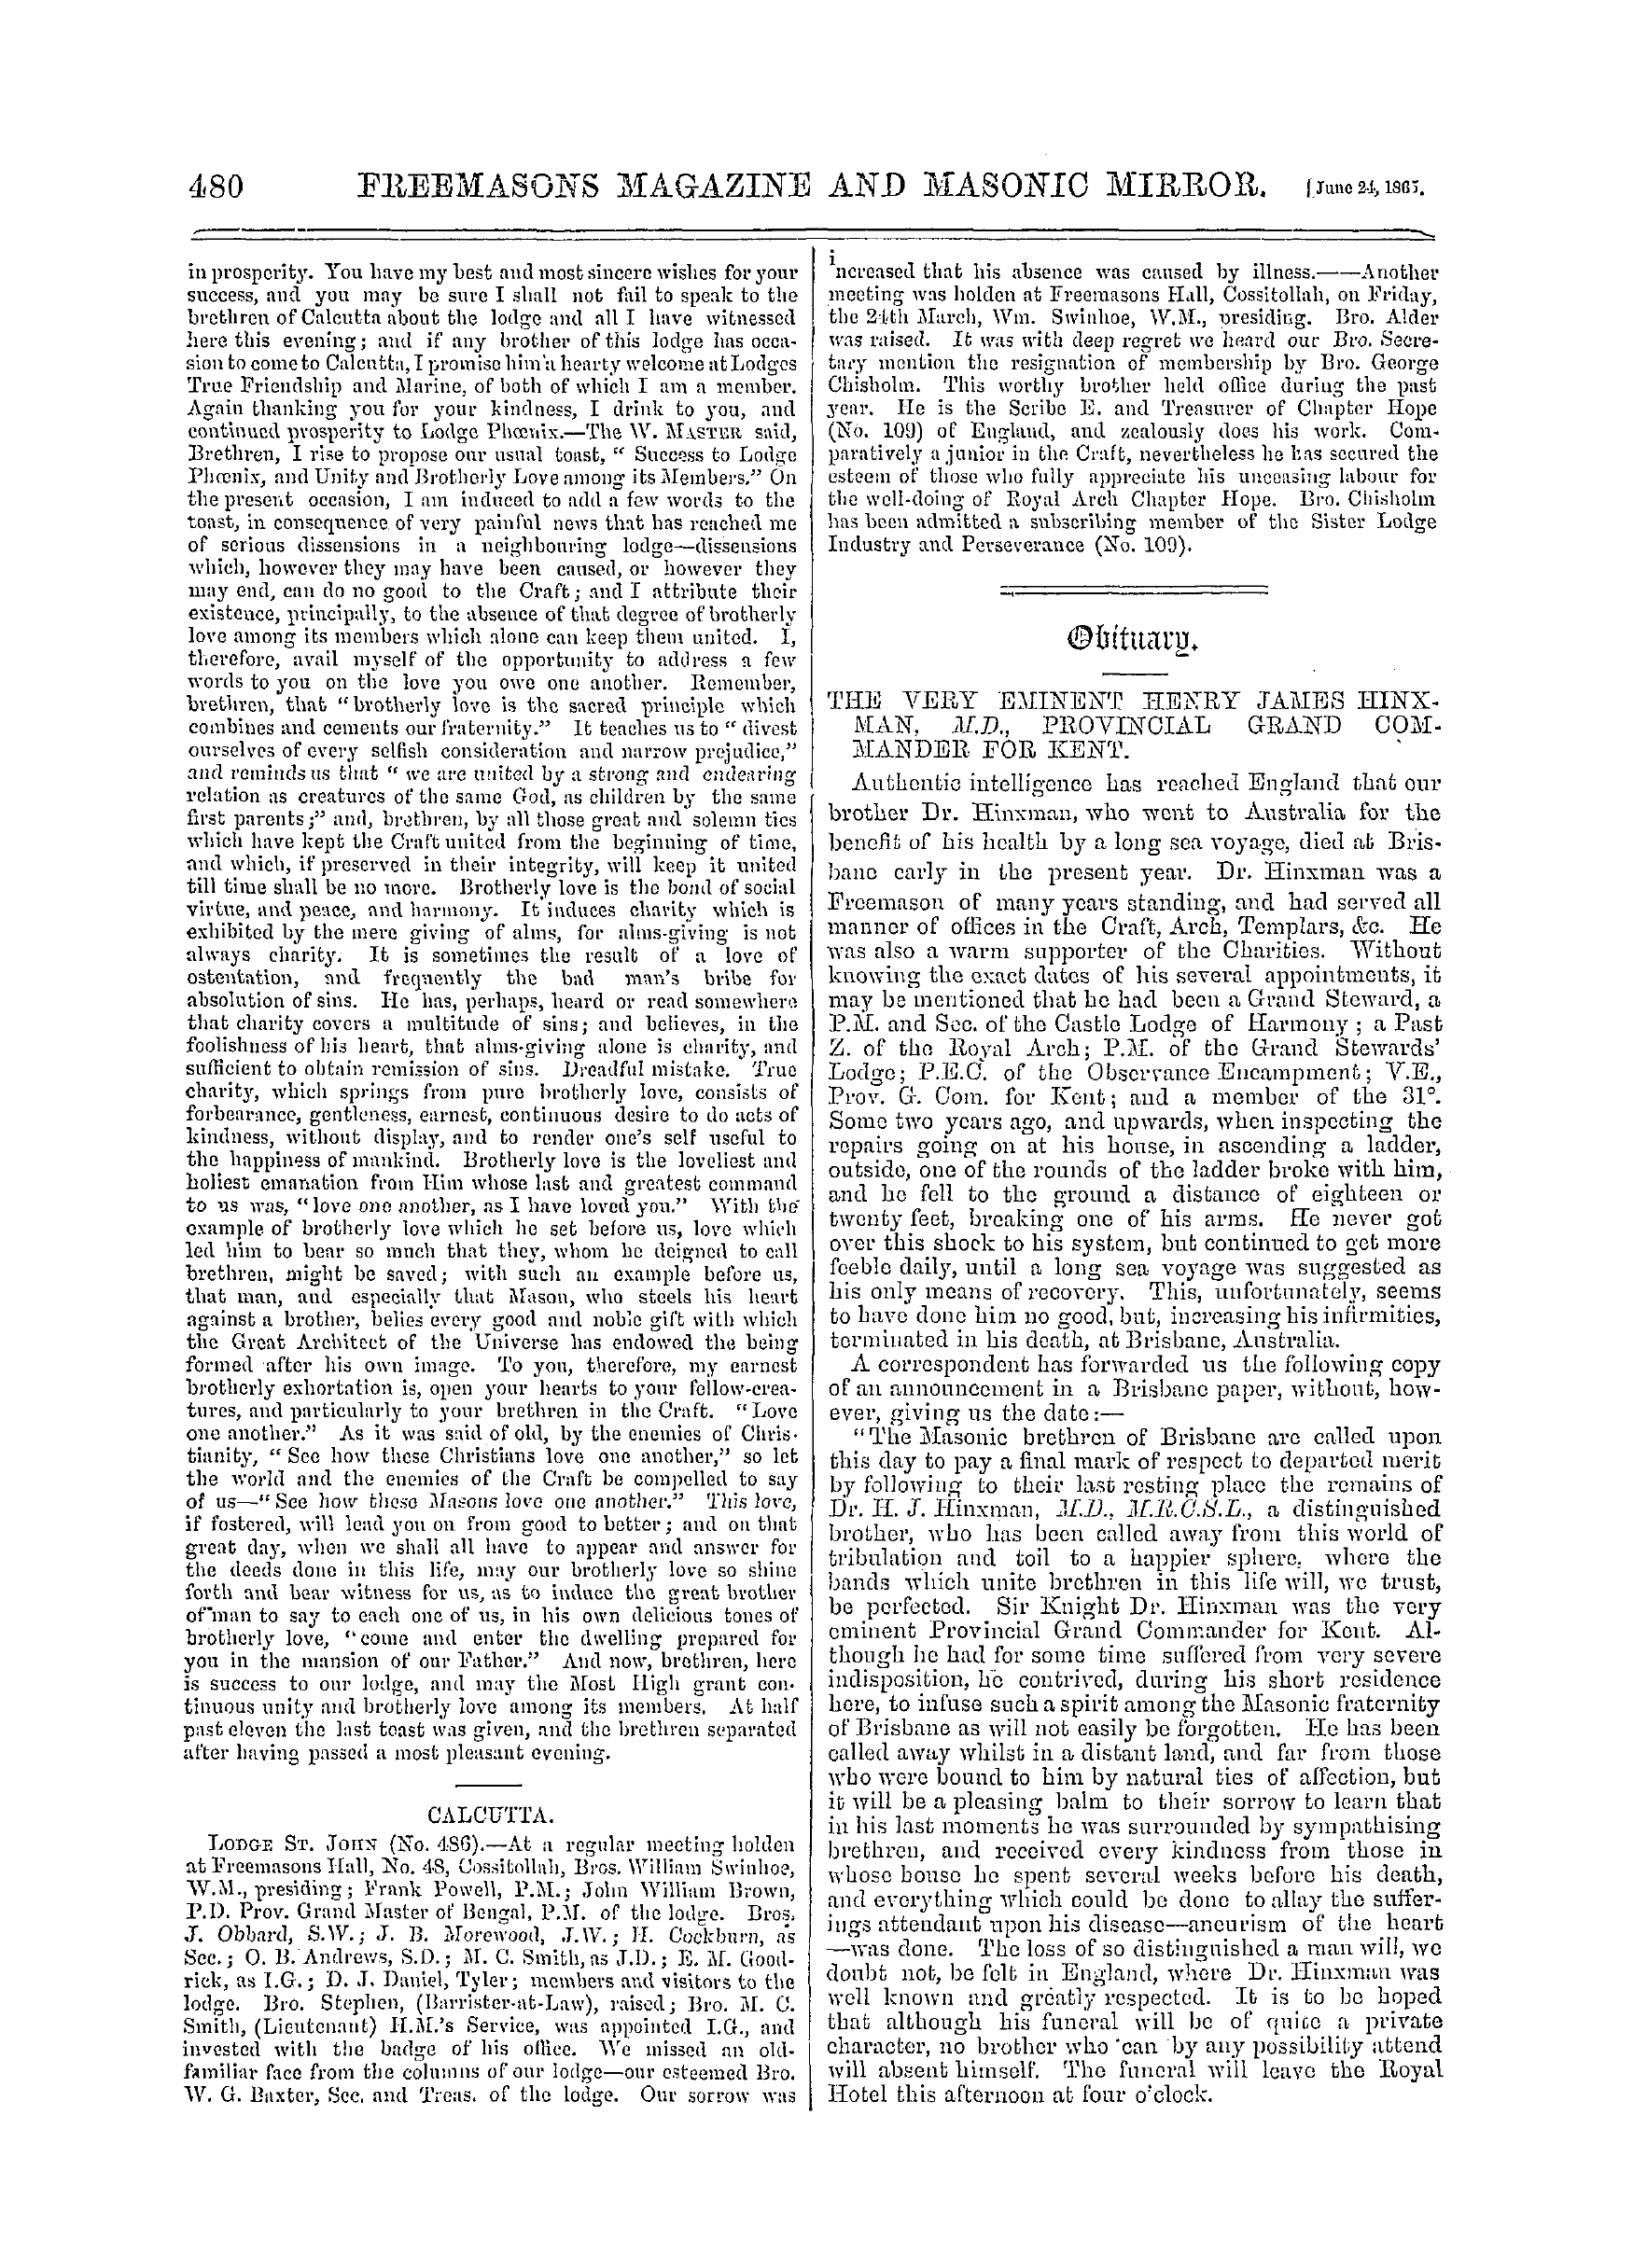 The Freemasons' Monthly Magazine: 1865-06-24 - India.